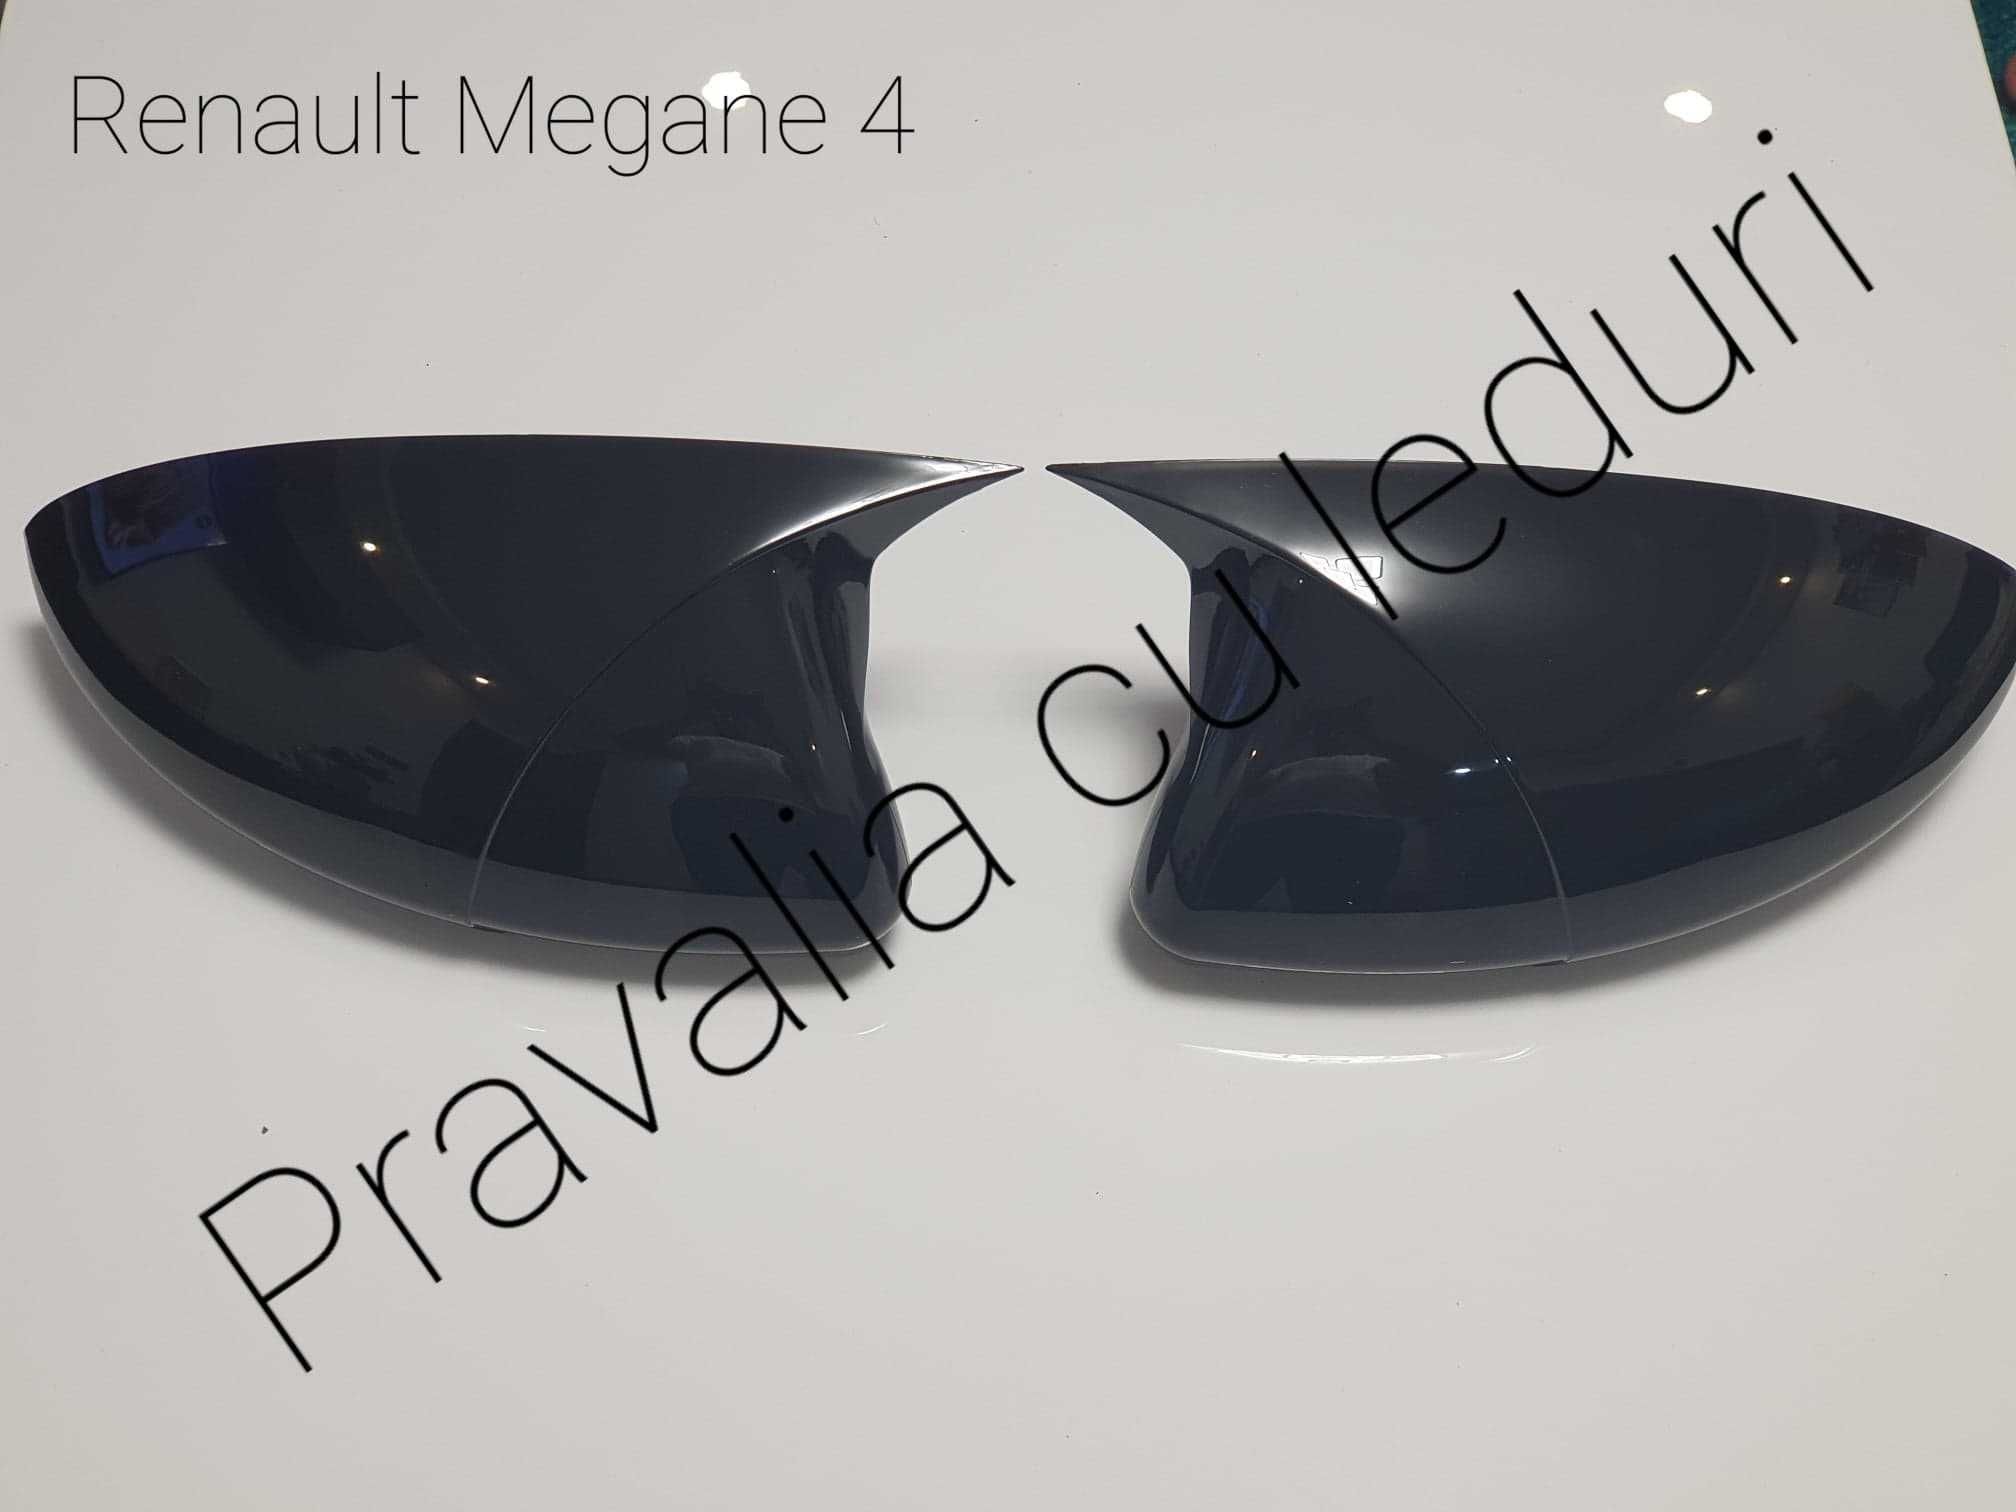 Capace oglinzi model Batman pentru Renault Megane 4